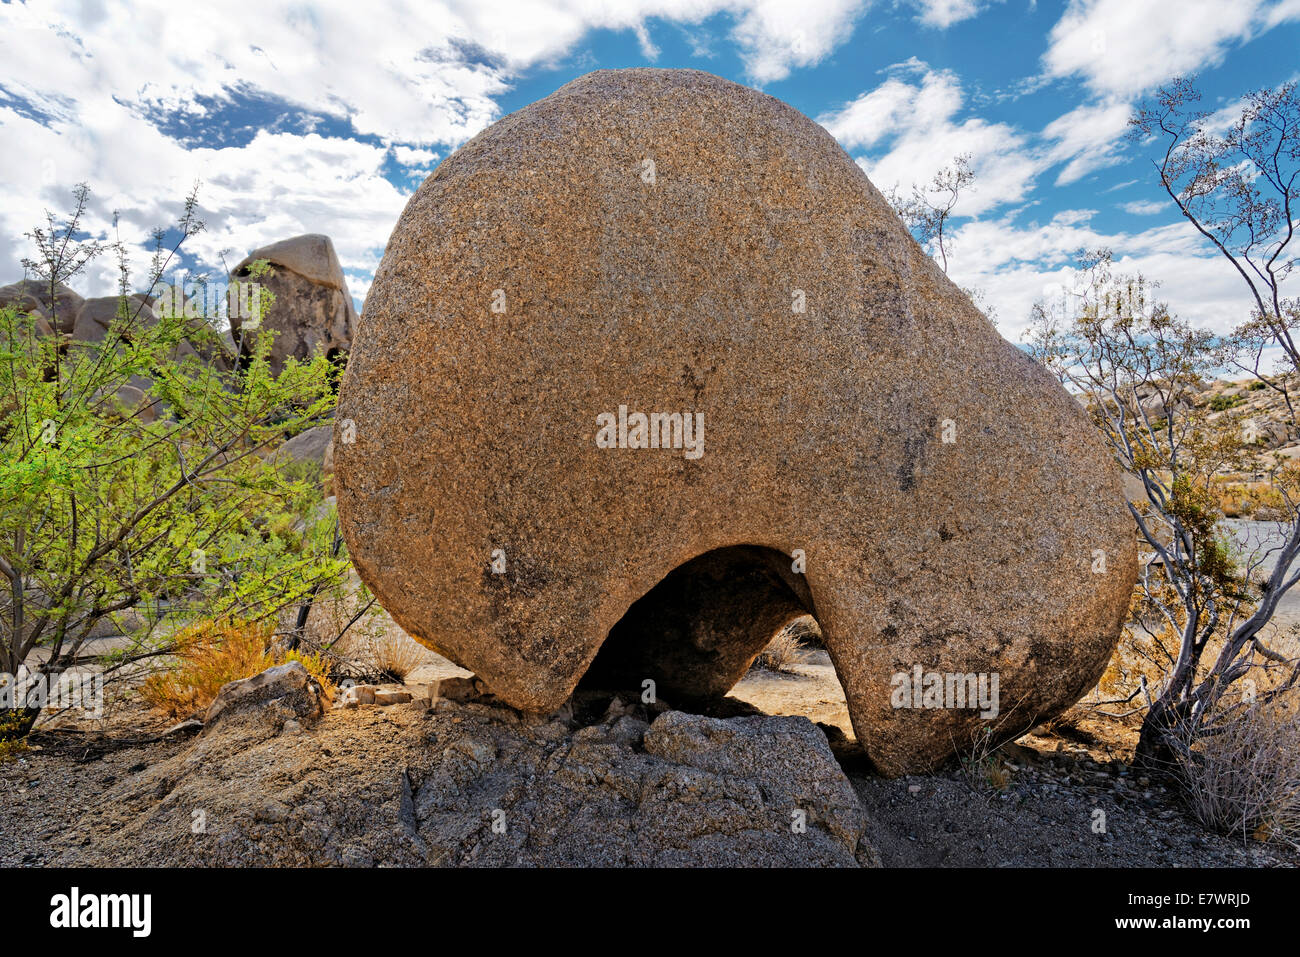 Una forma rotonda grande roccia di granito con un foro erosed, Split rocce, Joshua Tree National Park, Centro del deserto, CALIFORNIA, STATI UNITI D'AMERICA Foto Stock